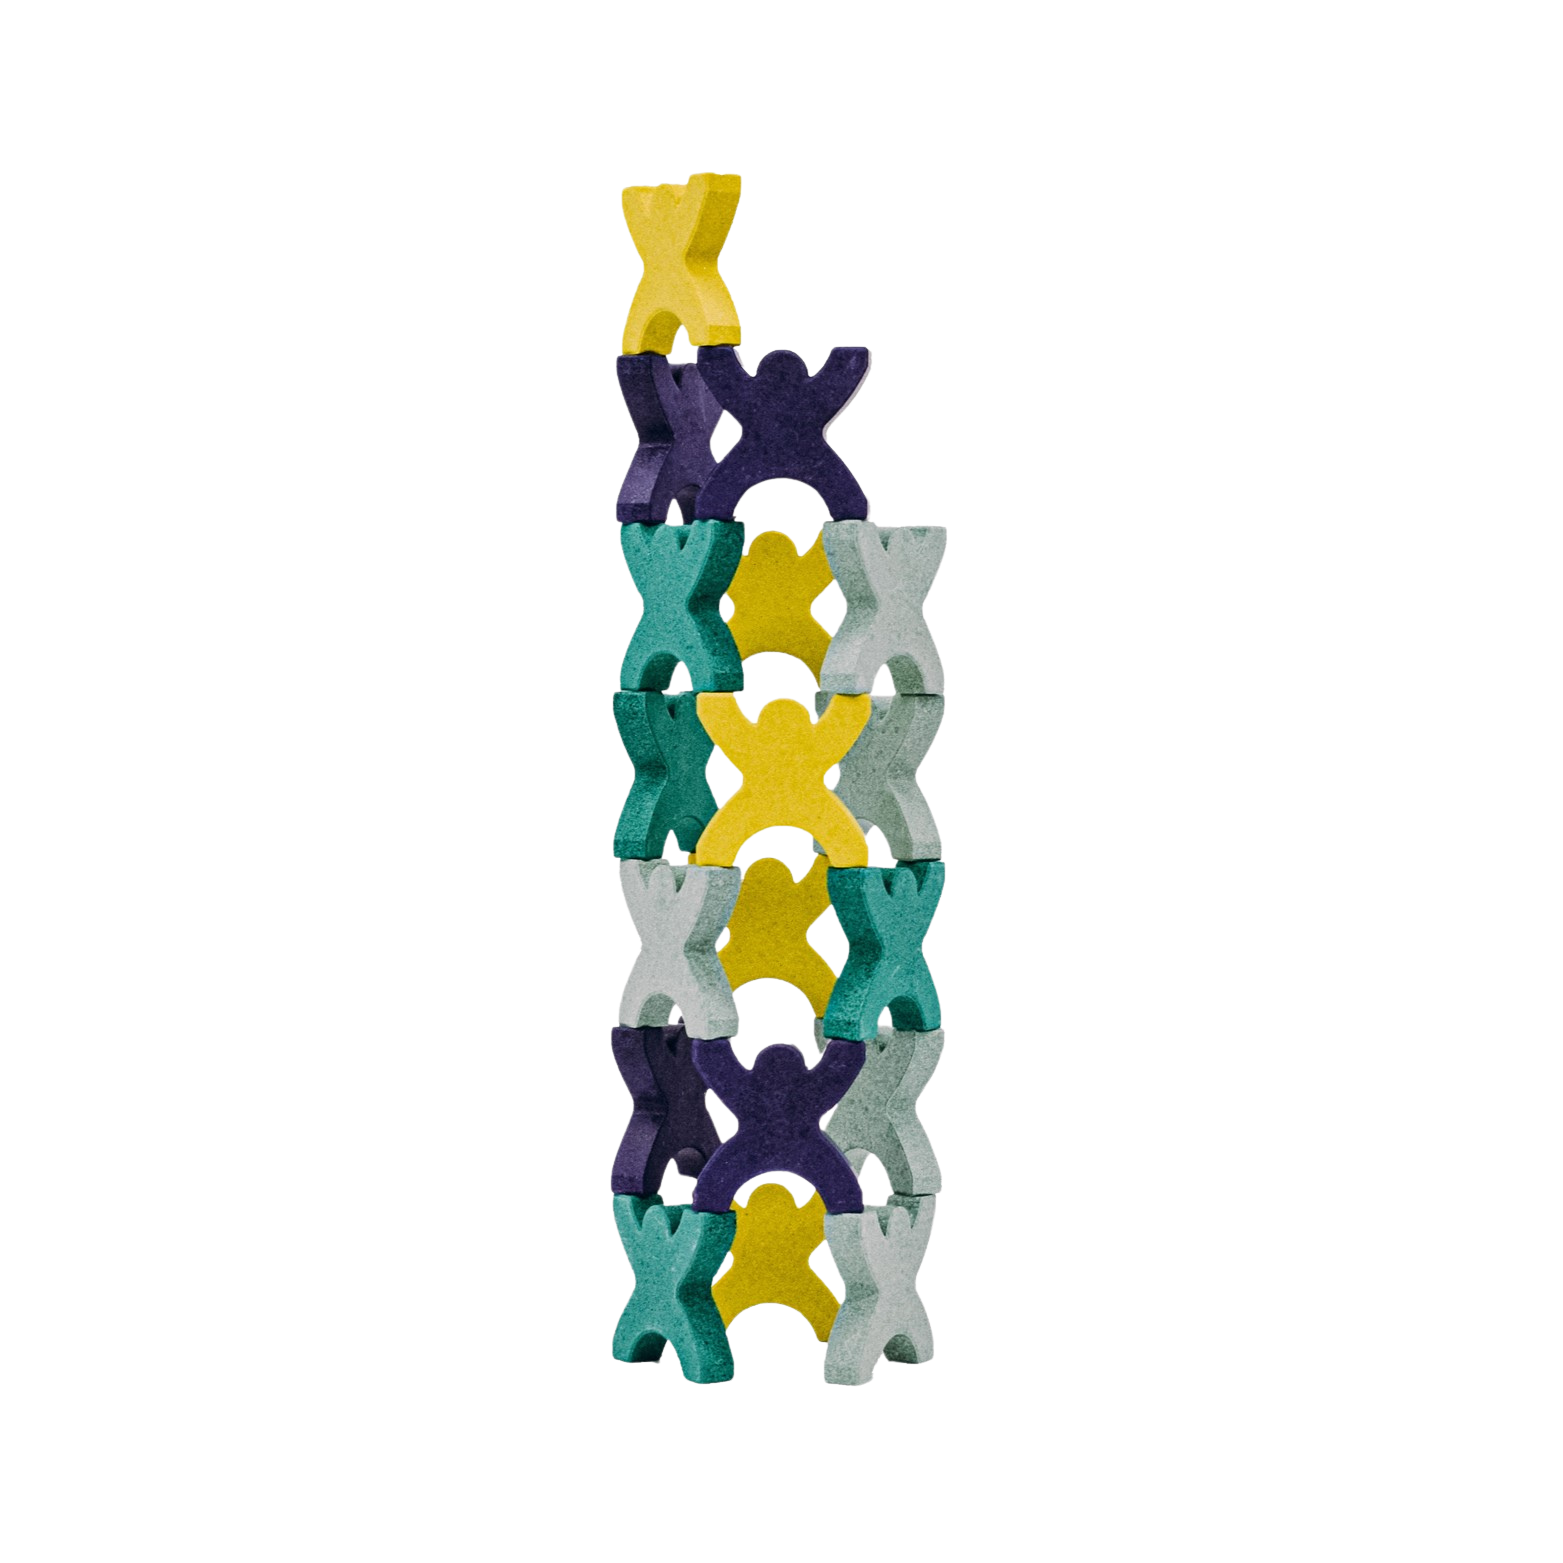 turm aus x förmigen männchen aus steingut in den farben gelb, blau, grün und graugelb